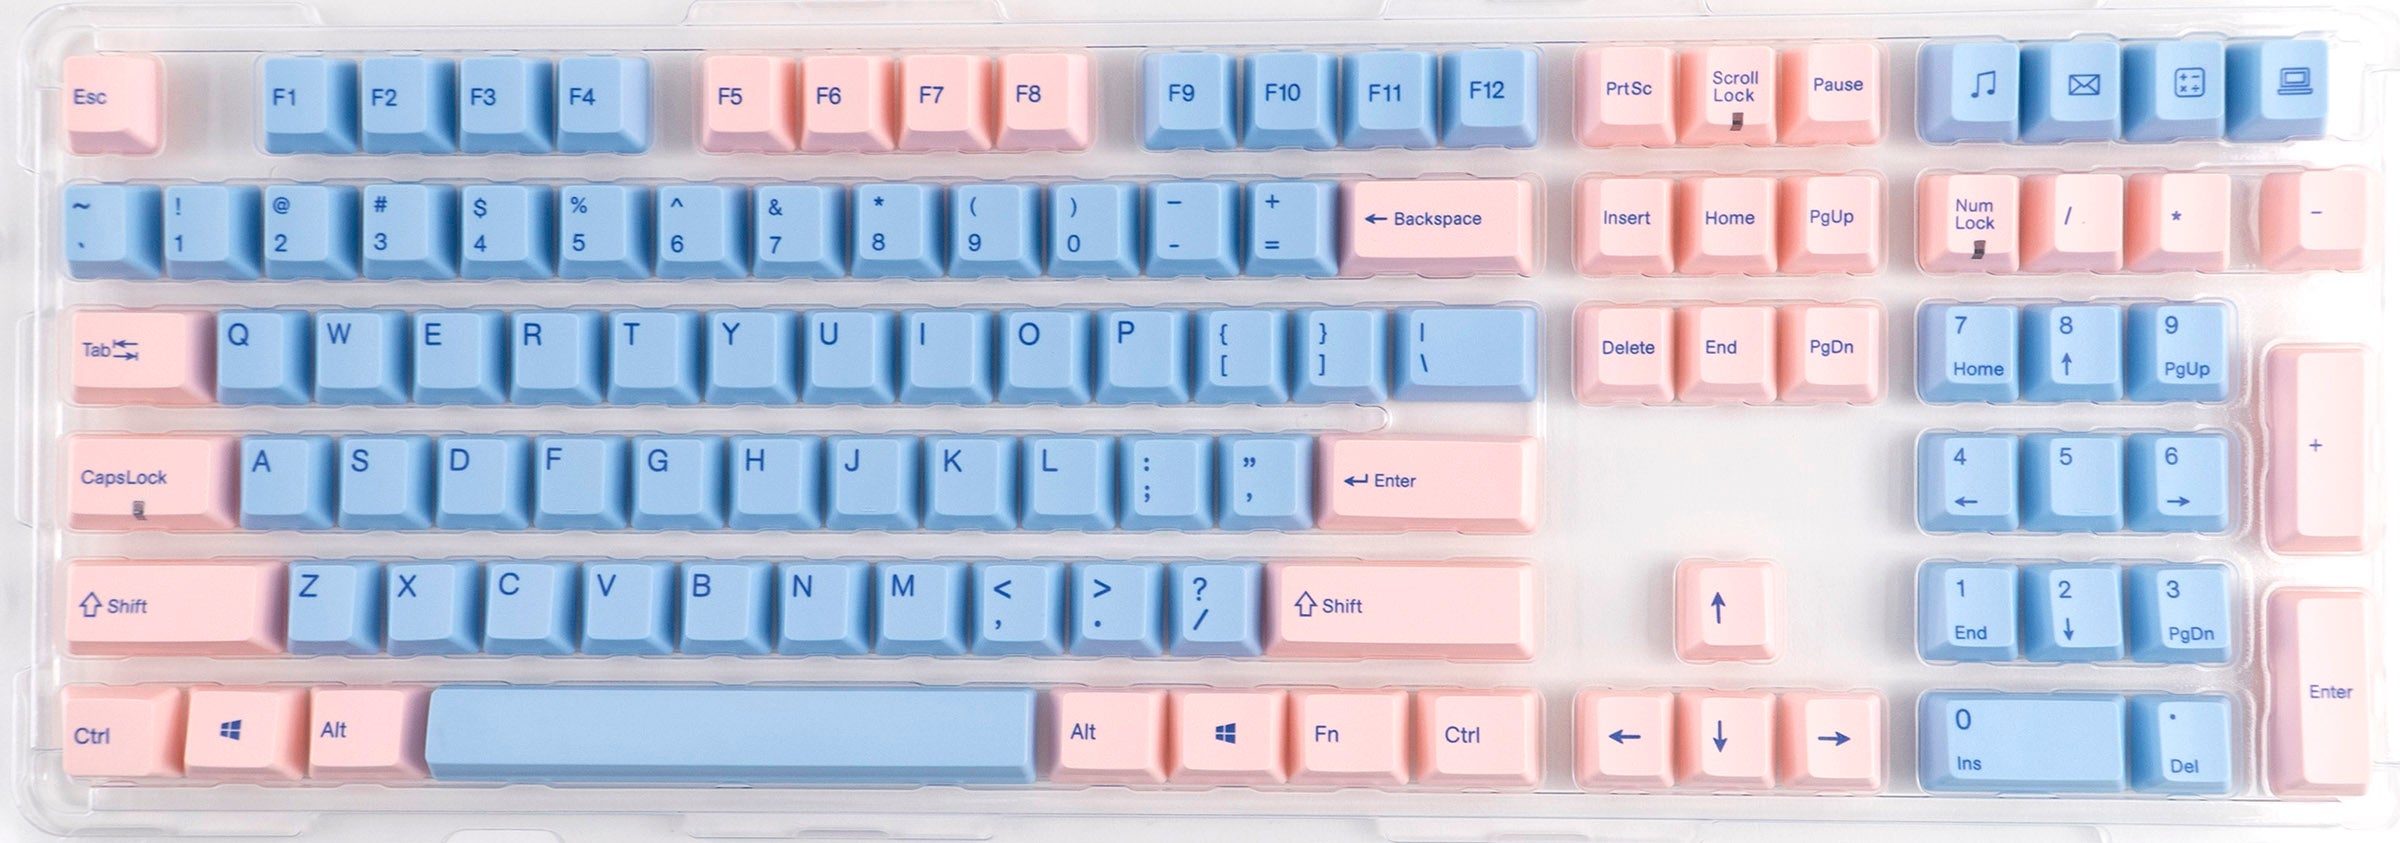 Varmilo 108-Key Dye Sub PBT Keycap Set Blue and Pink MKFW1D2QRV |0|